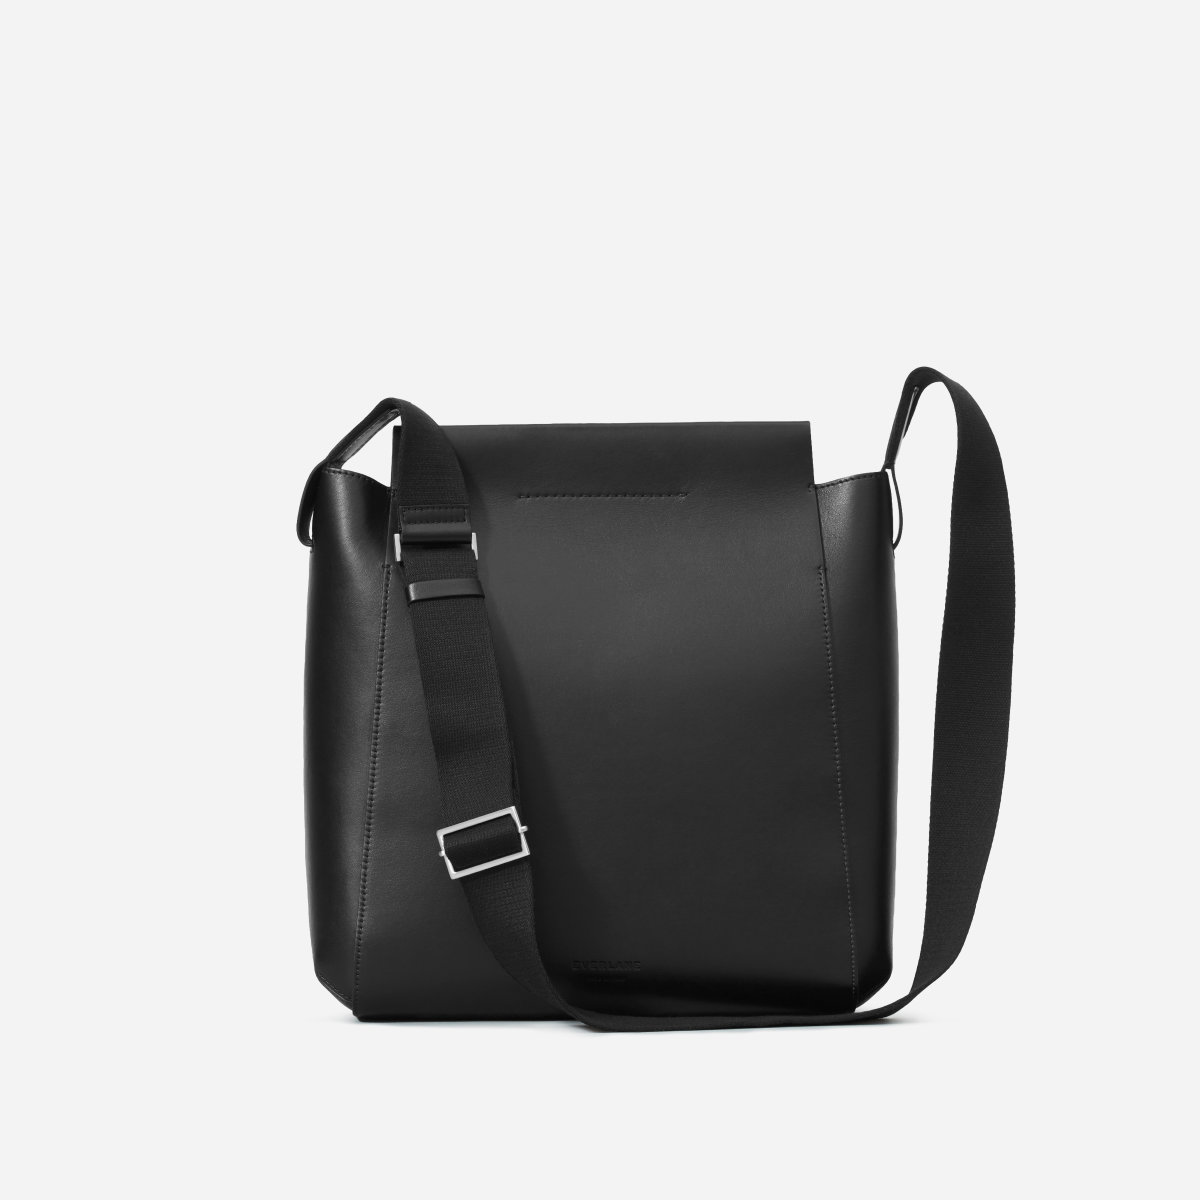 Everlane Form Bag in Black Leather